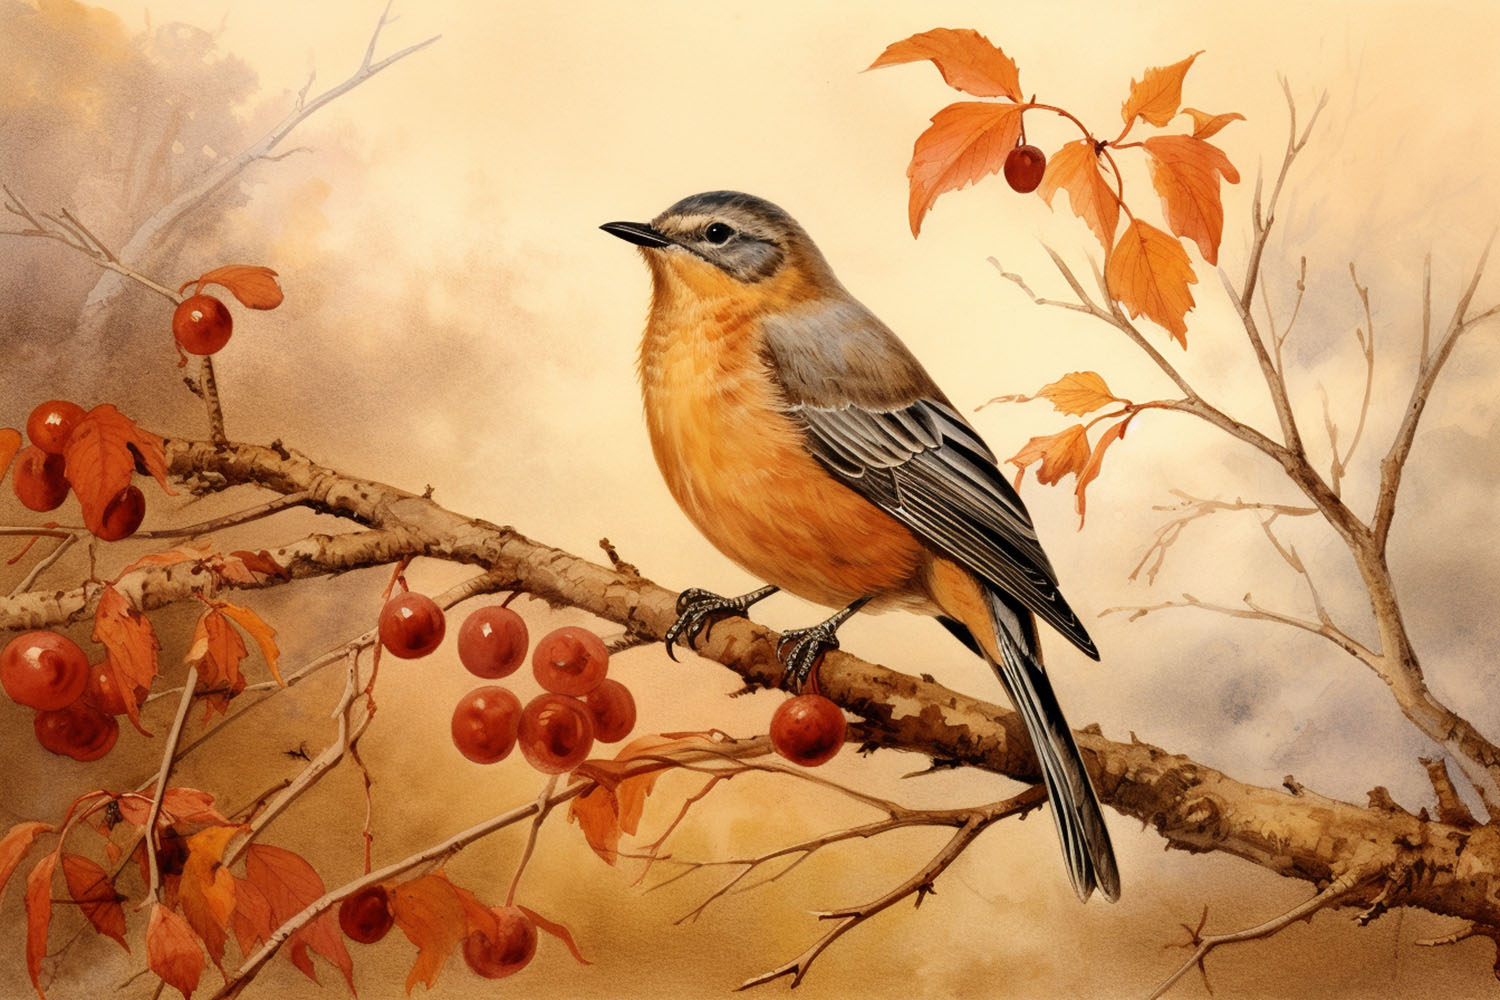 Fall scene with bird